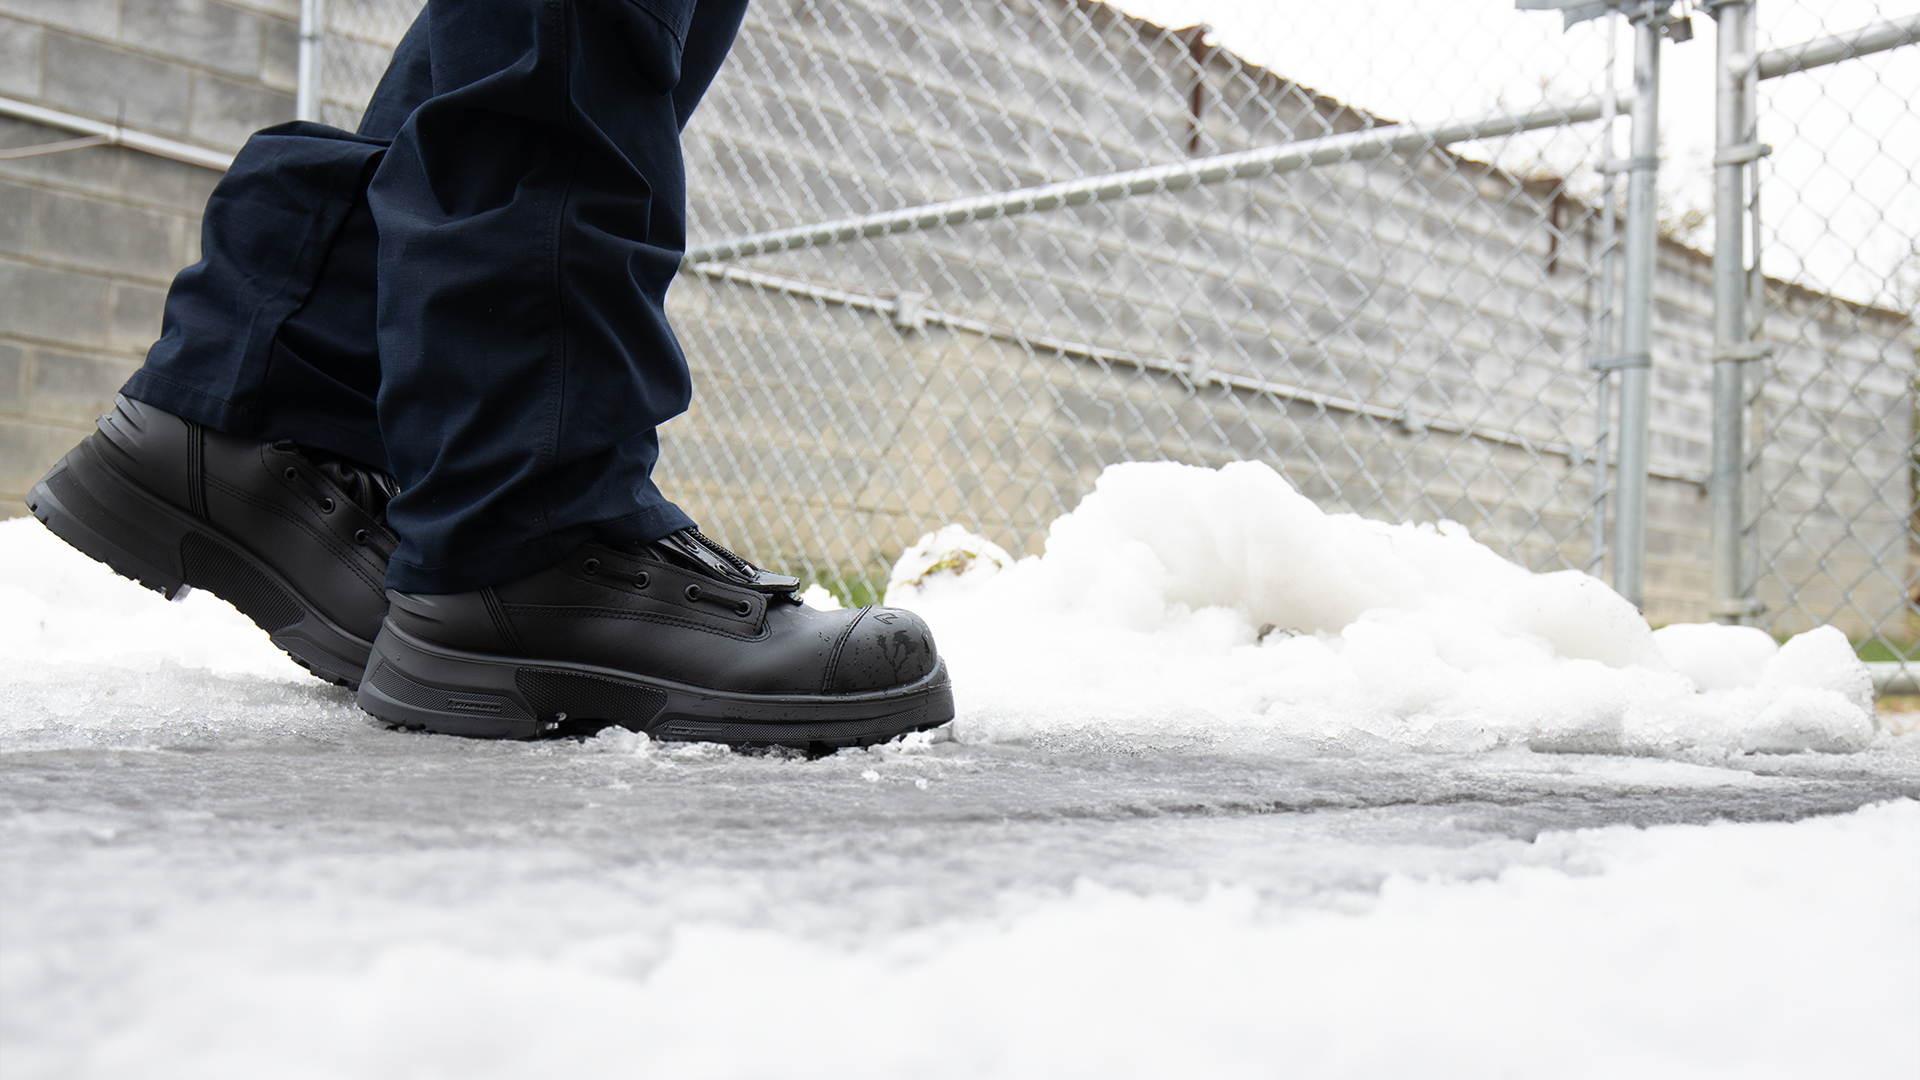 Snow & Ice Grip Work Boots  Wildland, EMS, USAR, & HAZMAT Boots